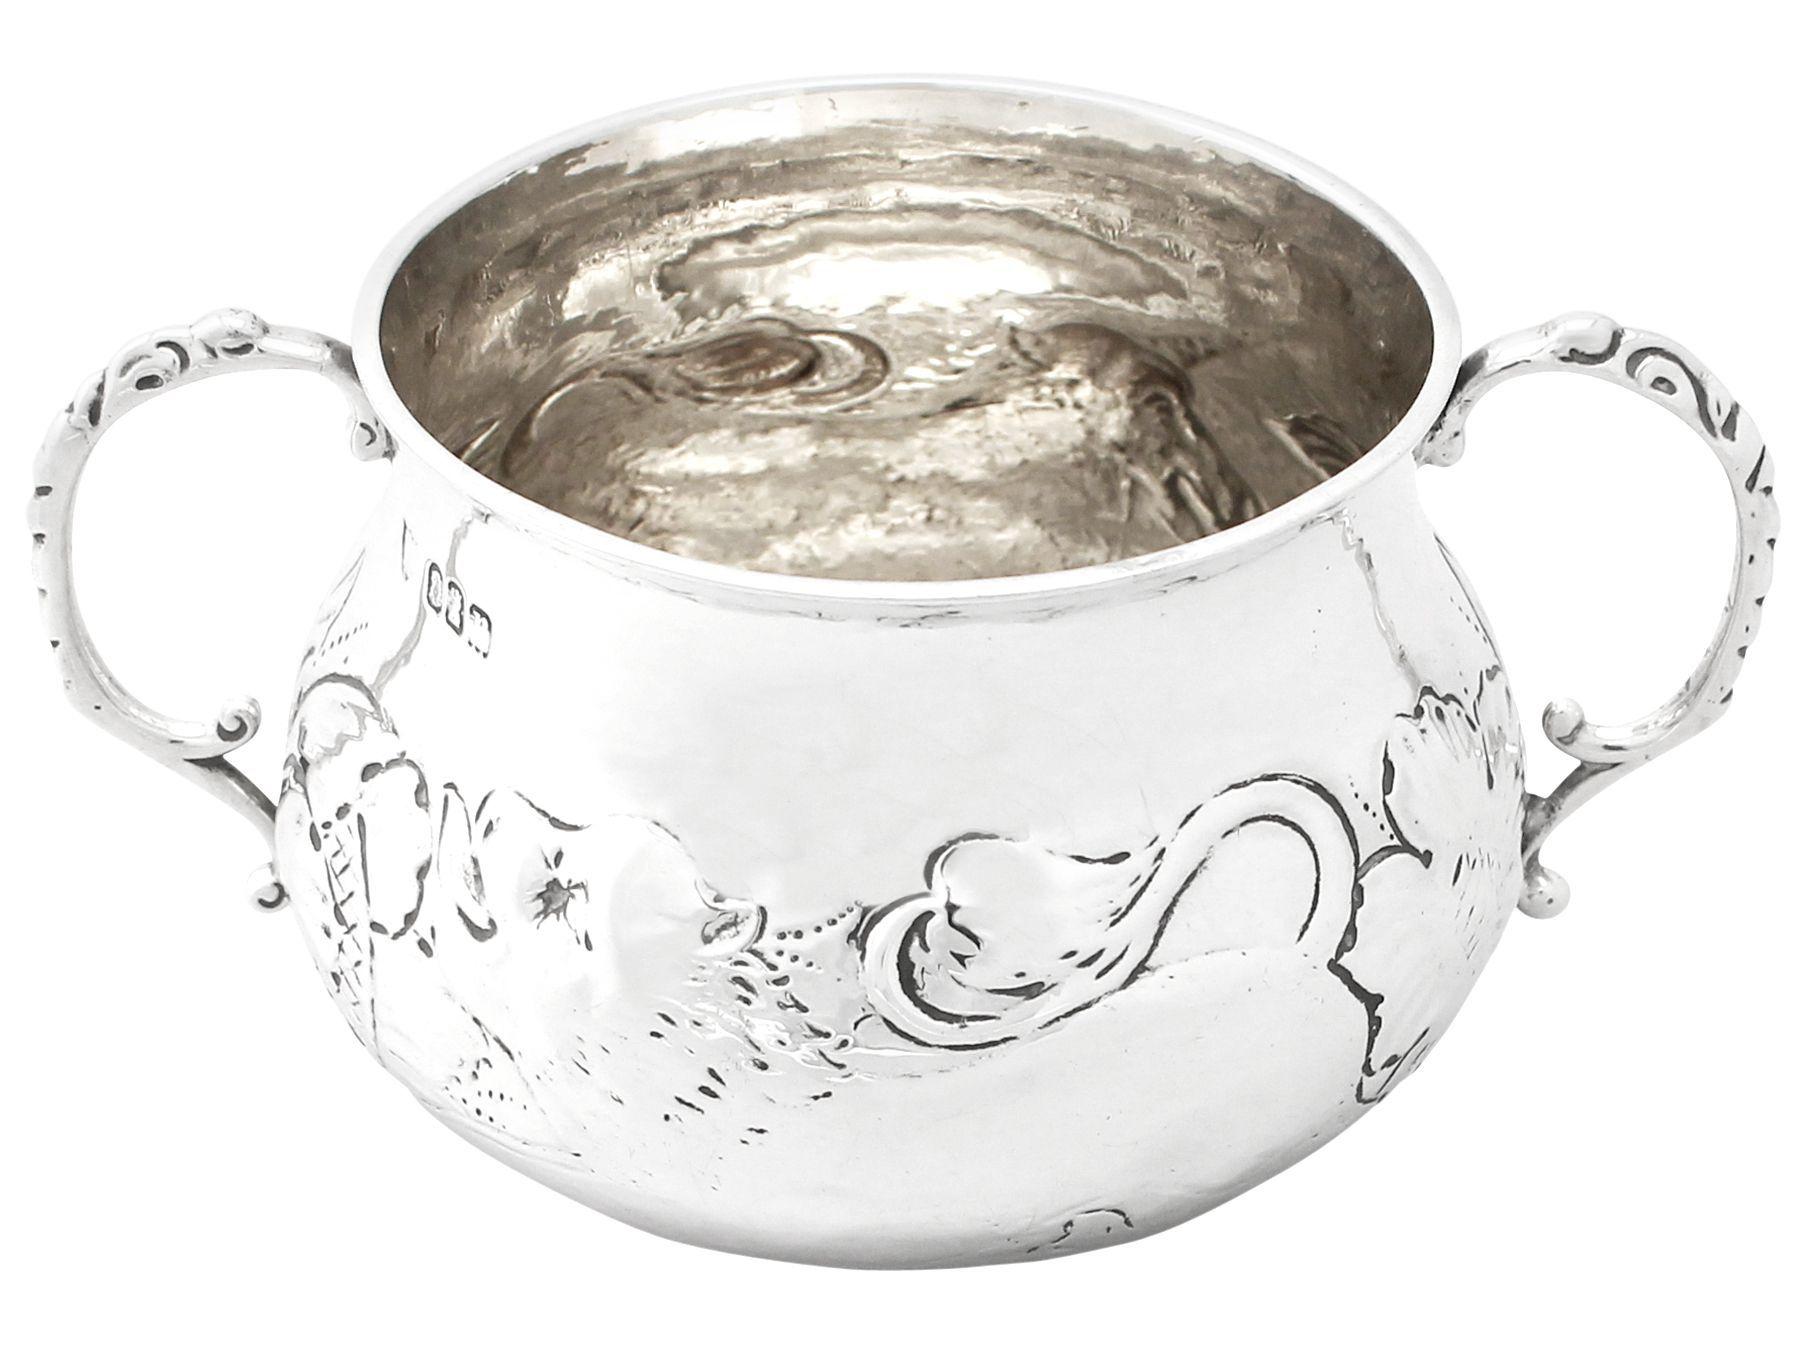 Eine sehr gute antike George V Englisch Britannia Standard Silber Charles II Stil porringer; eine Ergänzung zu unserer Silberwaren Sammlung.

Dieser antike George V. Britannia Standard Silber Porringer hat eine kreisförmige Form im Stil von